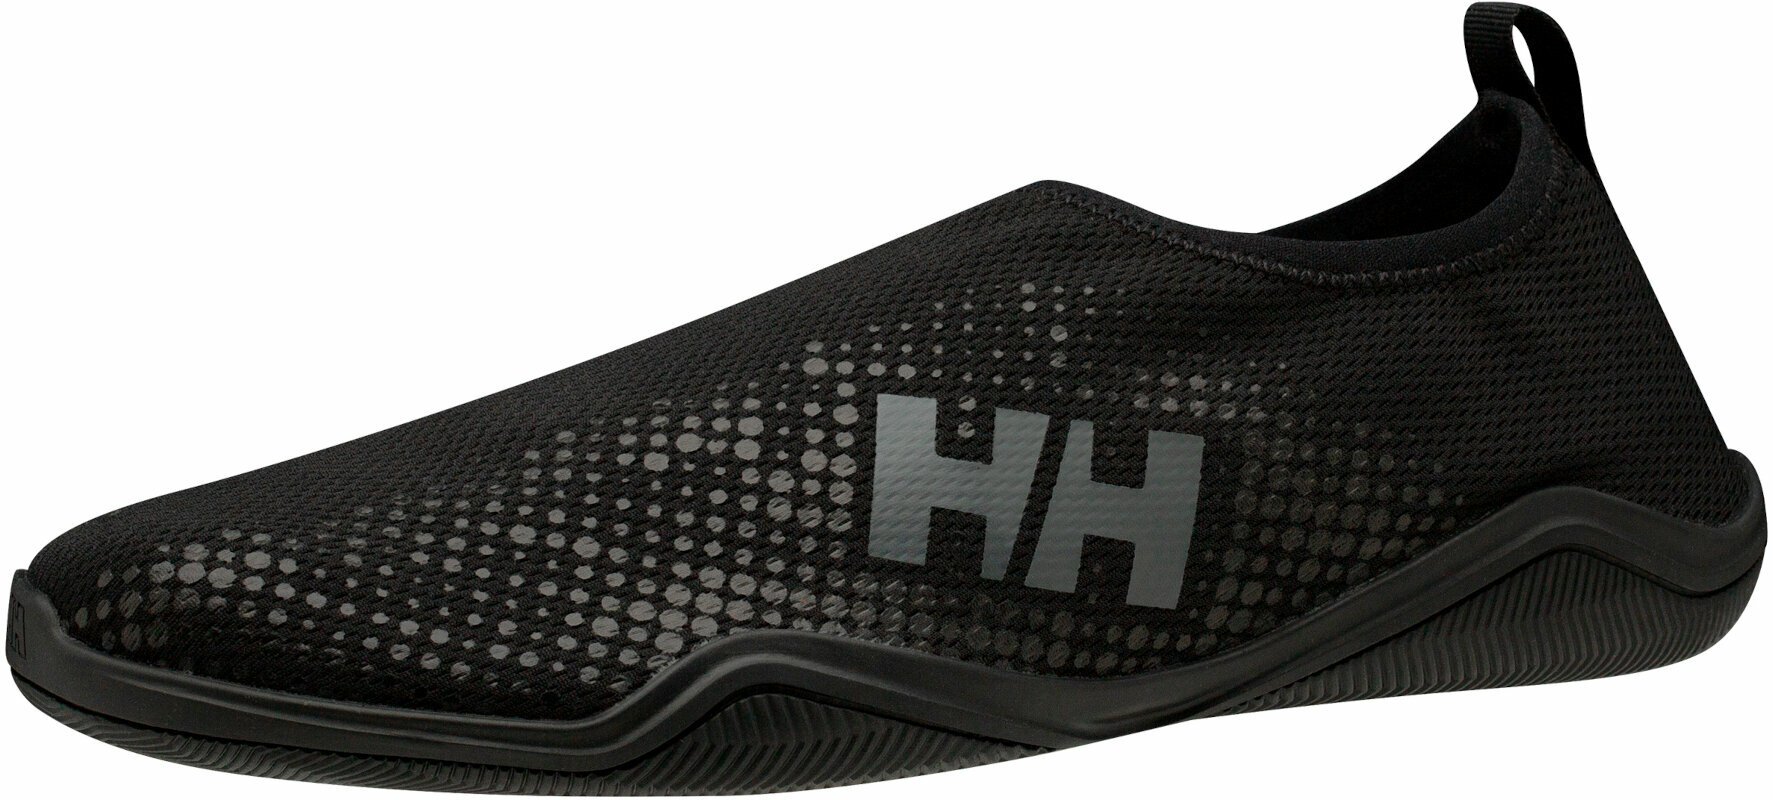 Ανδρικό Παπούτσι για Σκάφος Helly Hansen Men's Crest Watermoc Black/Charcoal 46